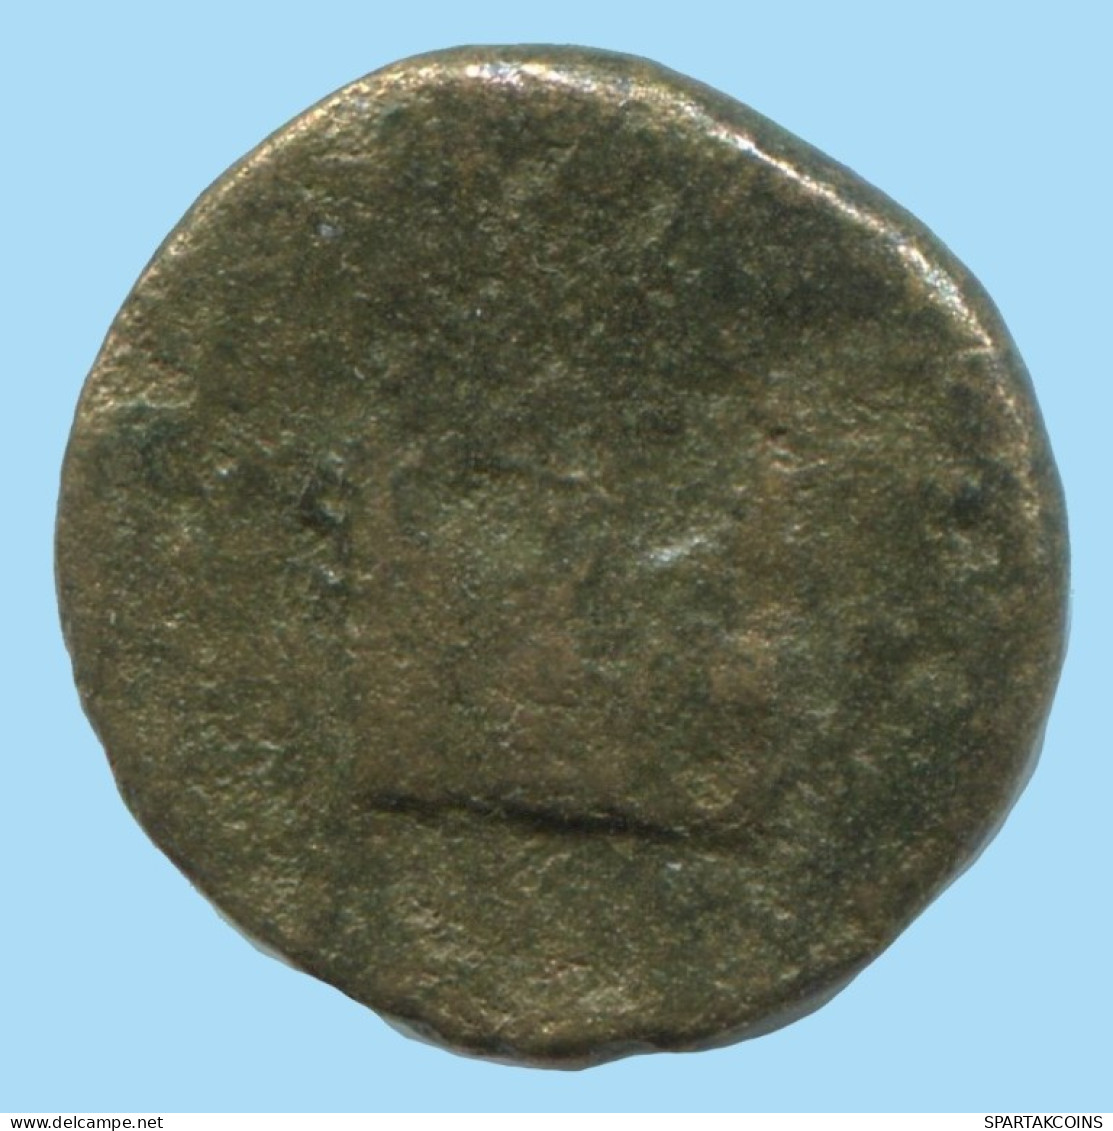 Auténtico ORIGINAL GRIEGO ANTIGUO Moneda 1.9g/14mm #AG162.12.E.A - Griekenland